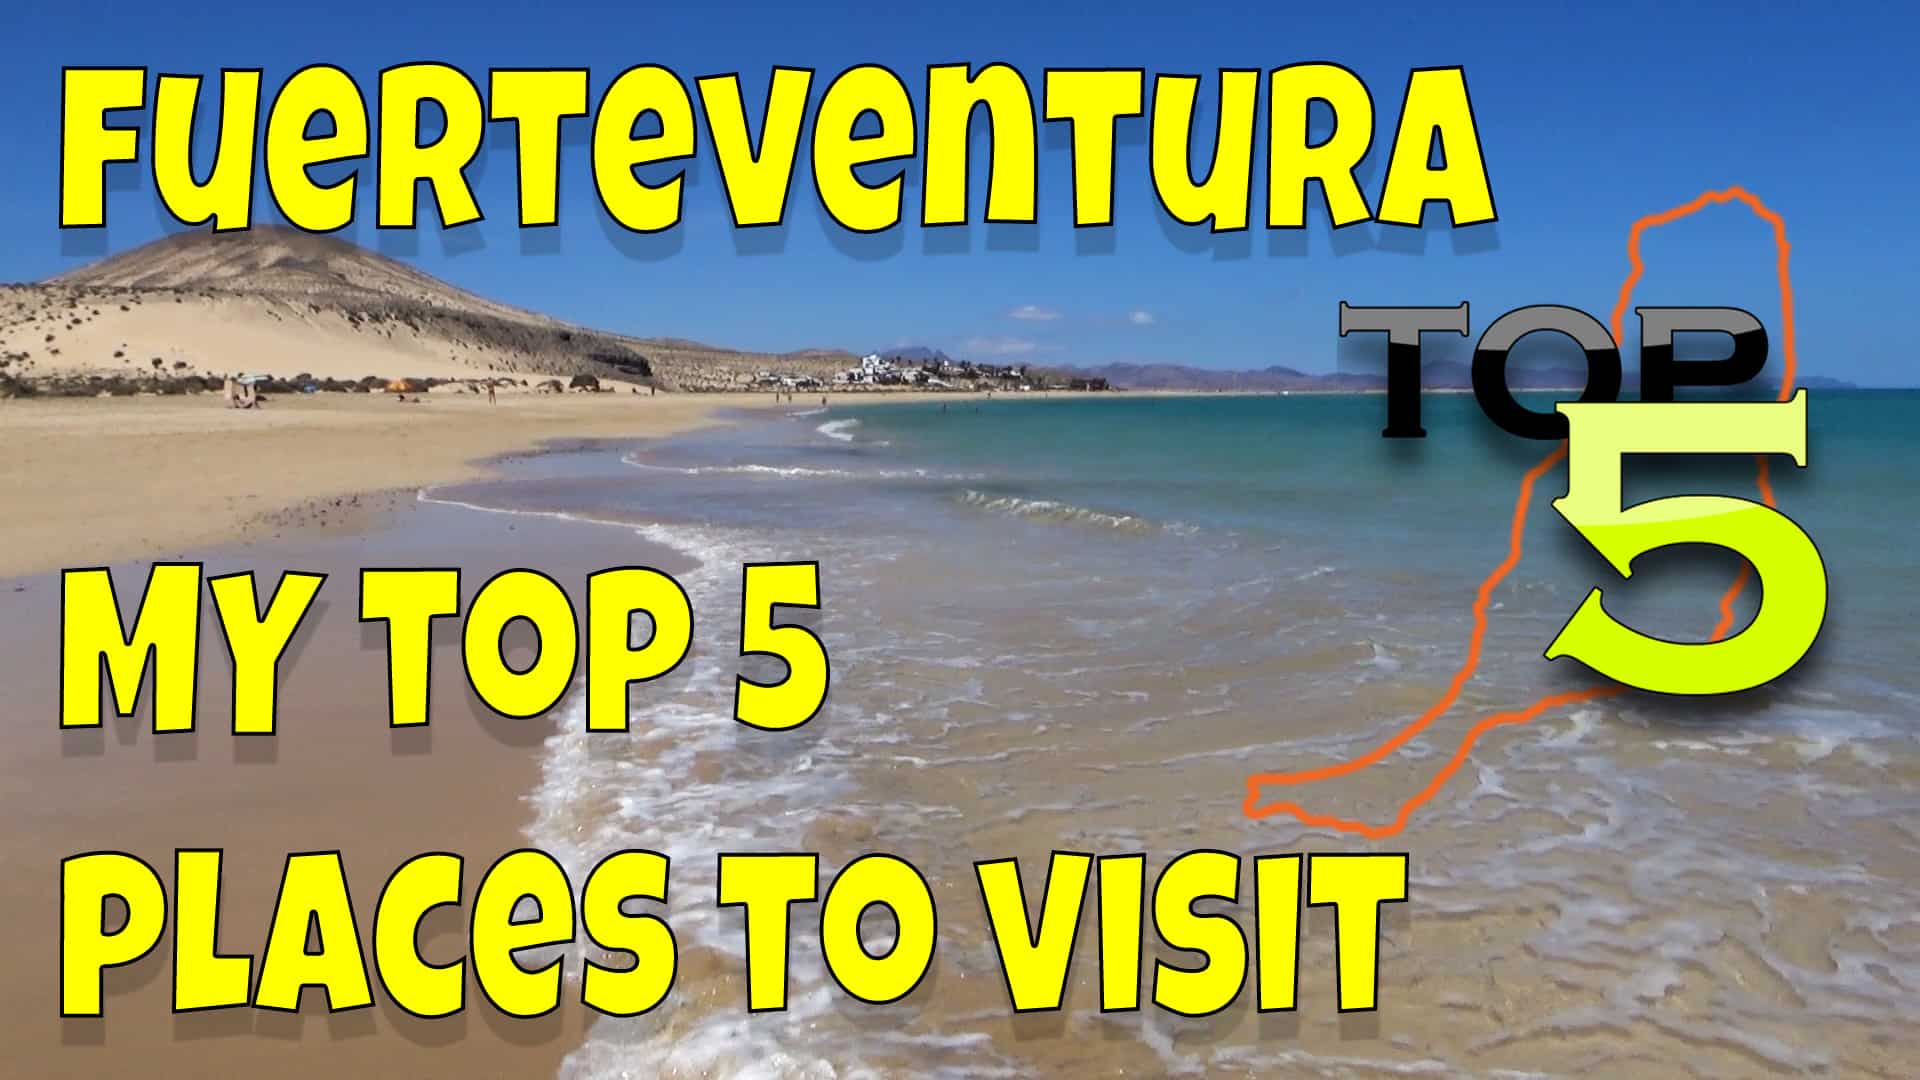 Top 5 places to visit in Fuerteventura